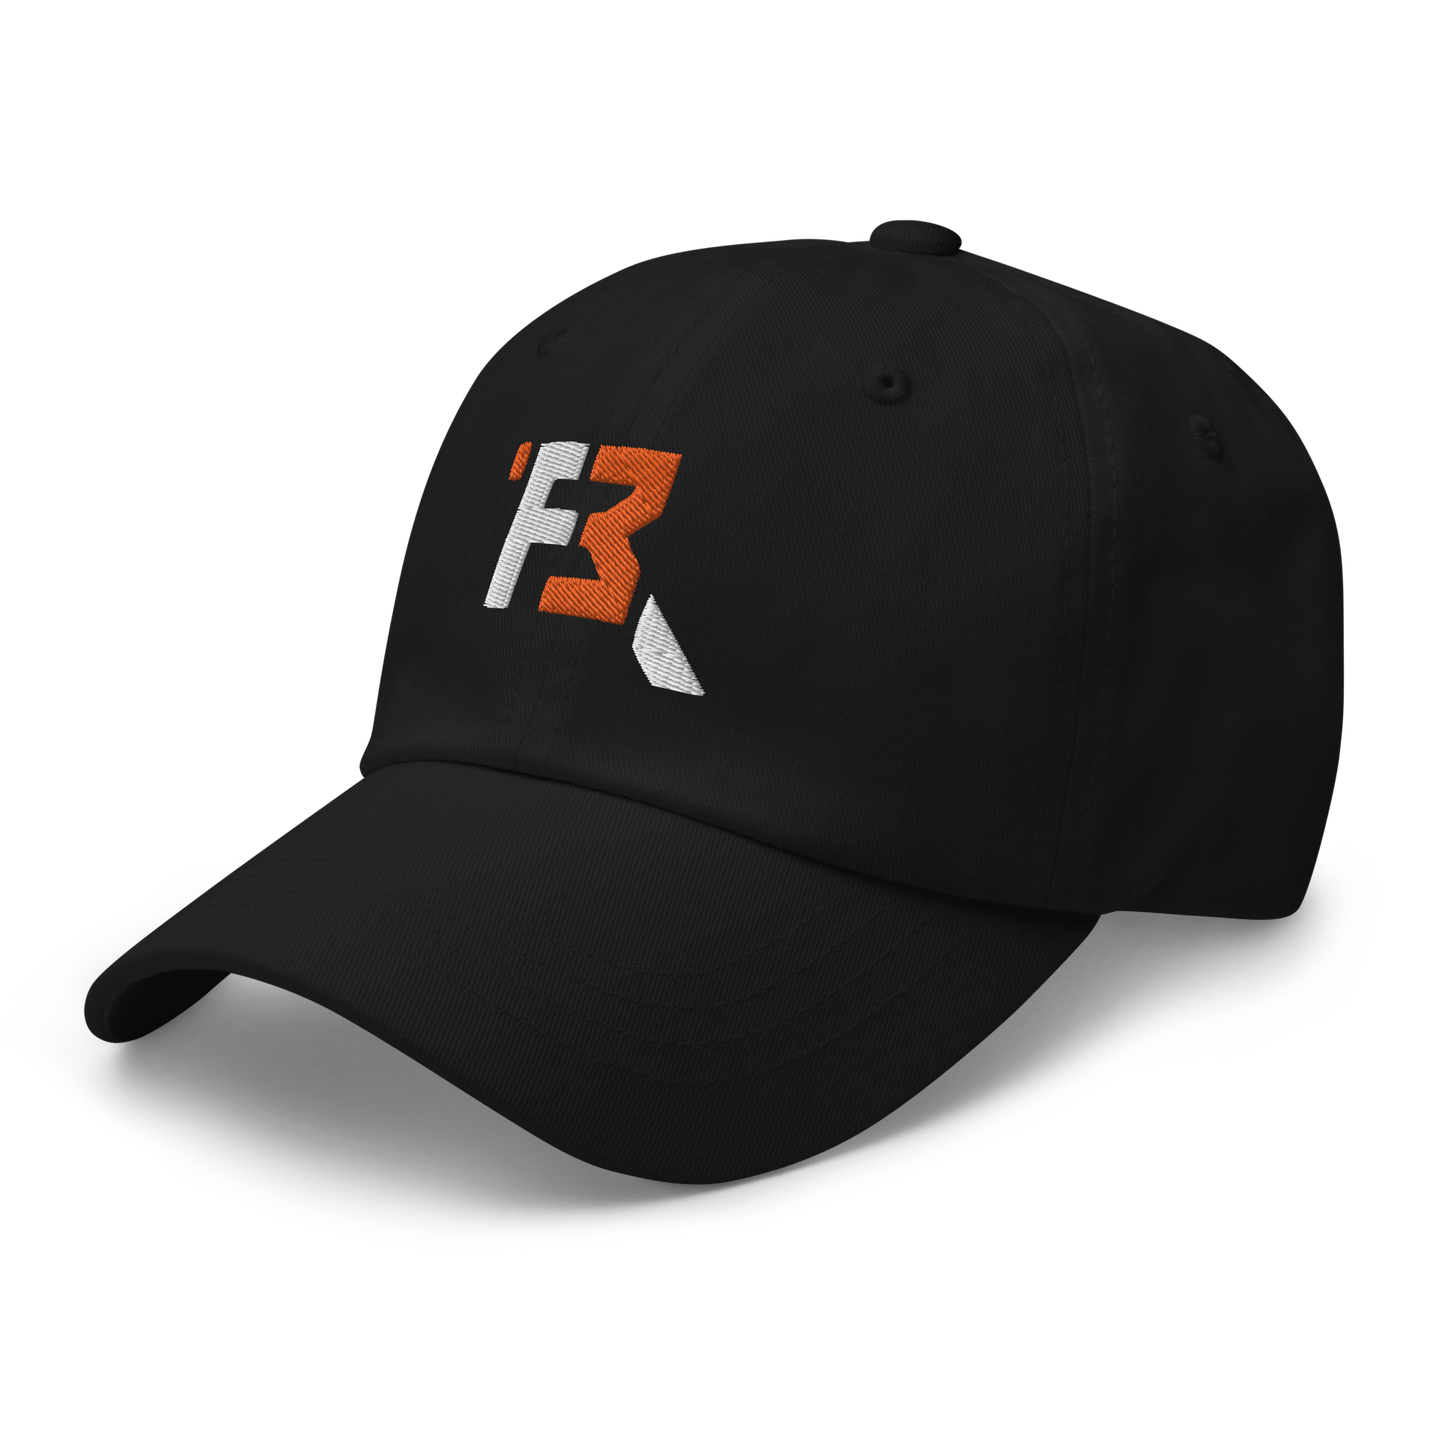 RIVALDO FAIRWEATHER PERFORMANCE CAP